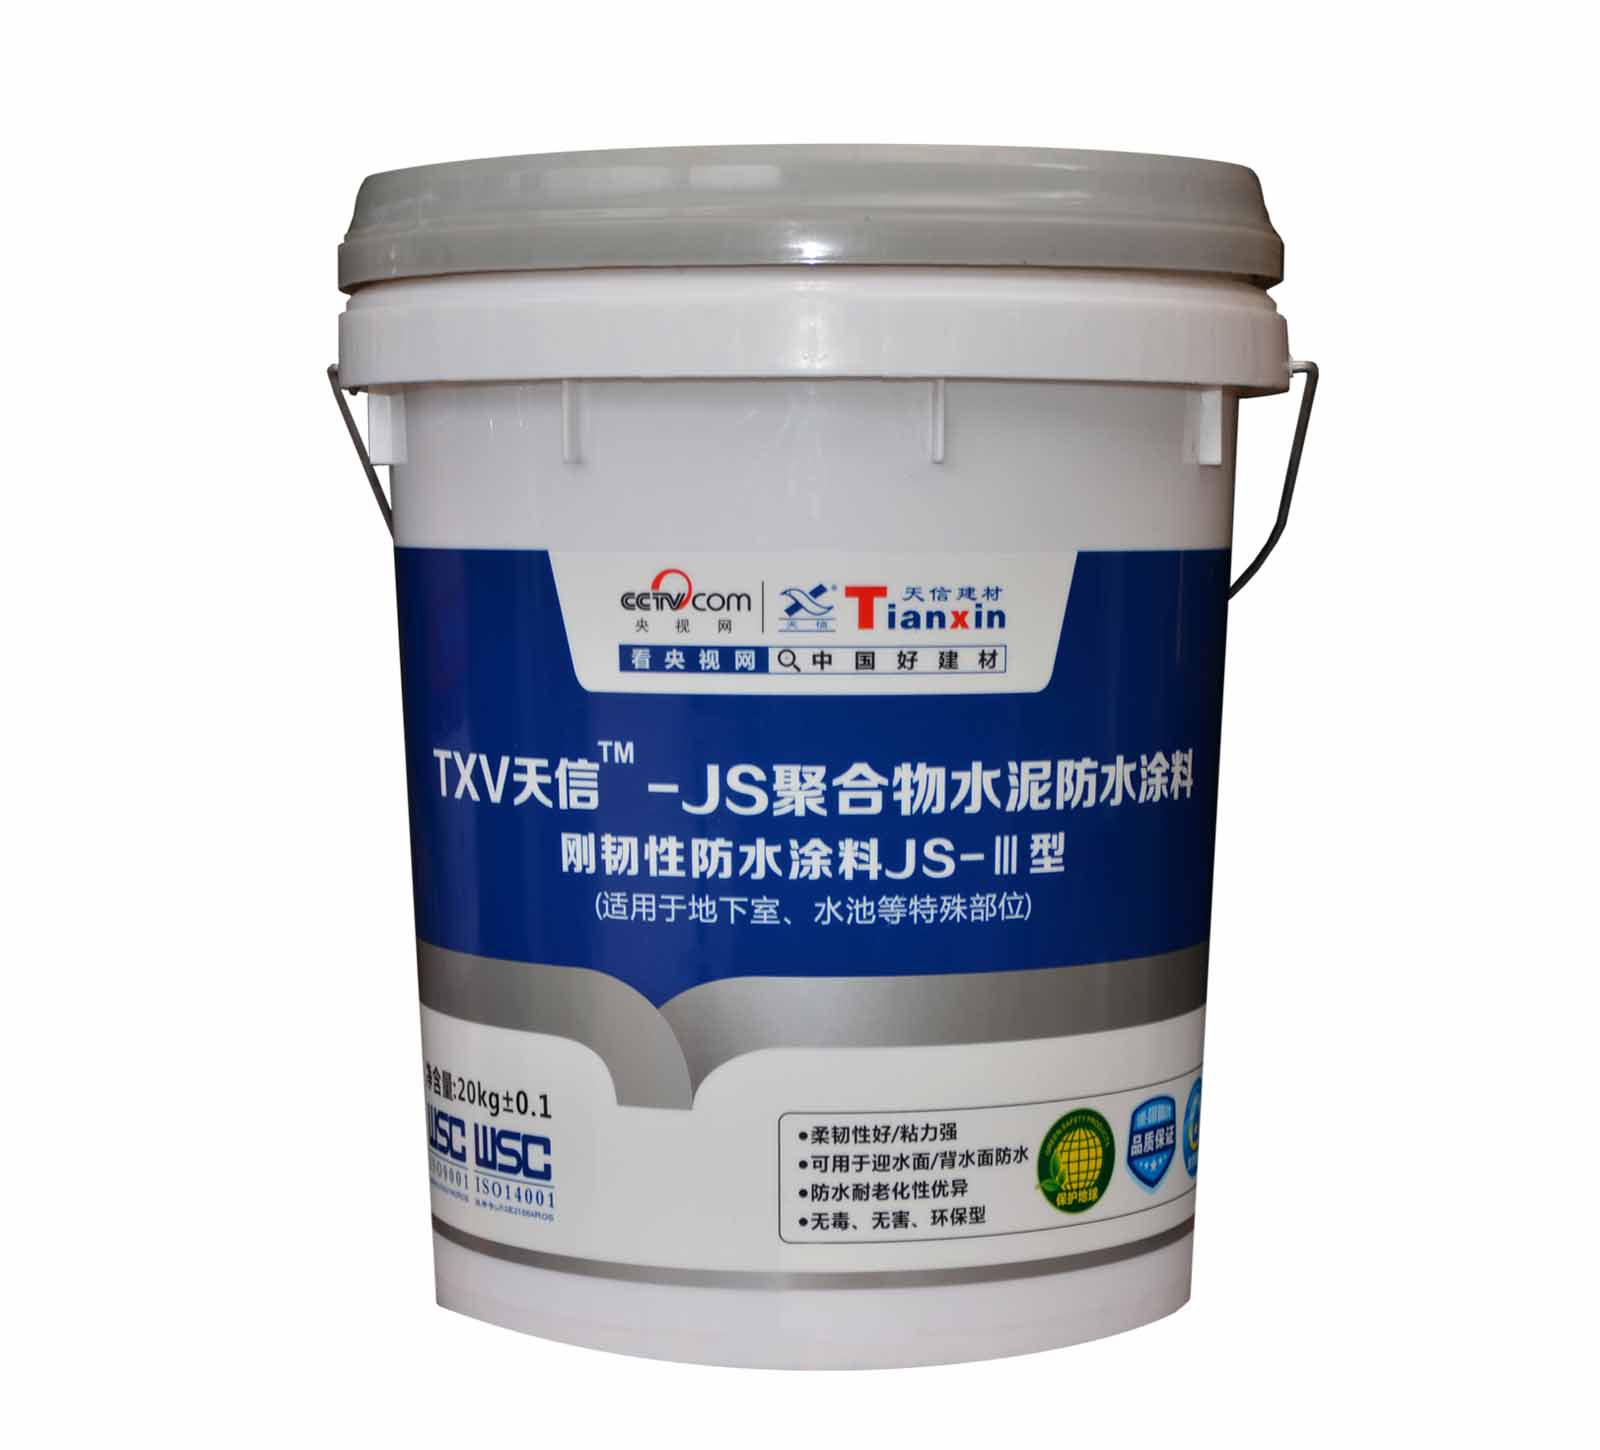 杭州市JS-II型聚合物防水涂料厂家天信JS-II型聚合物防水涂料 JS-II型聚合物防水涂料